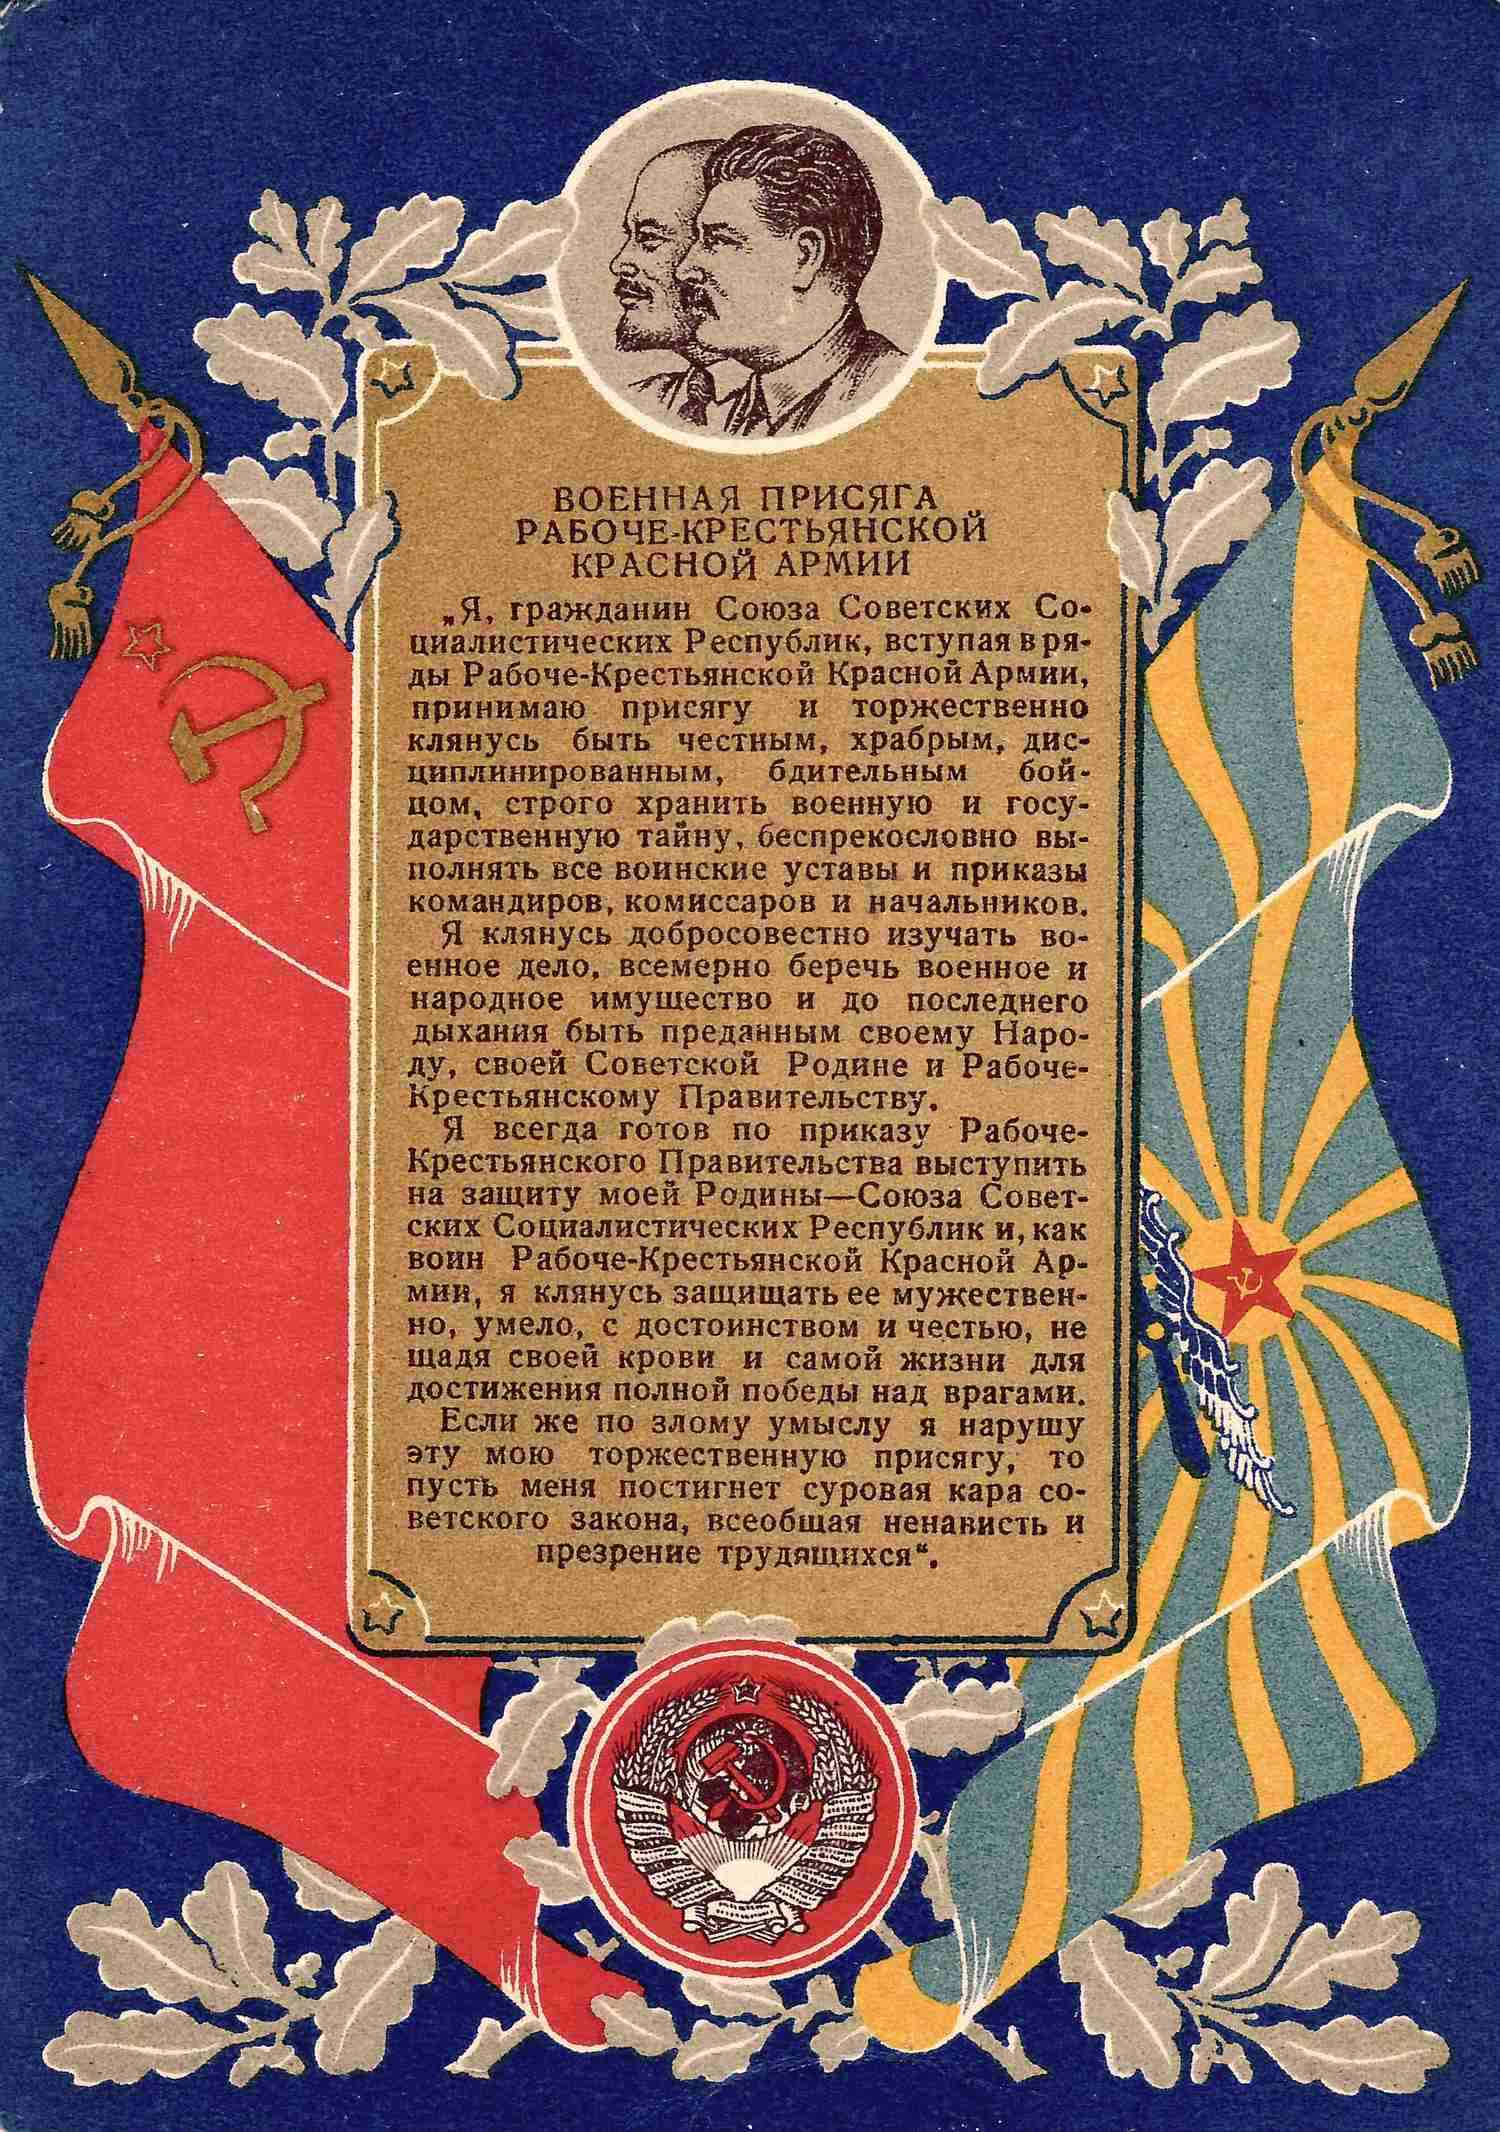 Фишер Г. Открытка «Военная присяга Рабоче-крестьянской Красной армии». М.: «Искусство», 1939.